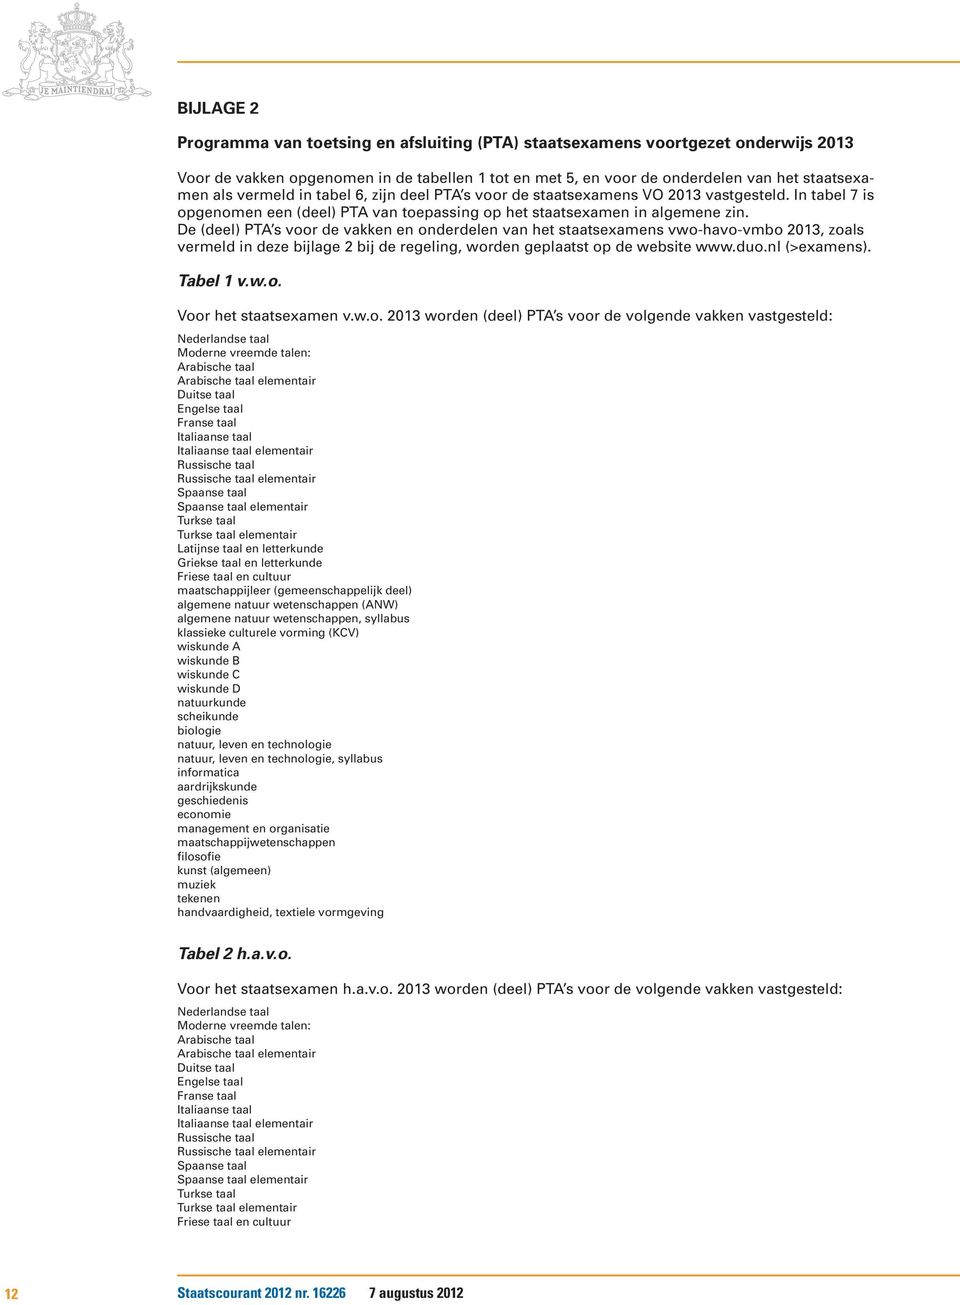 De (deel) PTA s voor de vakken en onderdelen van het staatsexamens vwo-havo-vmbo 2013, zoals vermeld in deze bijlage 2 bij de regeling, worden geplaatst op de website www.duo.nl (>examens). Tabel 1 v.